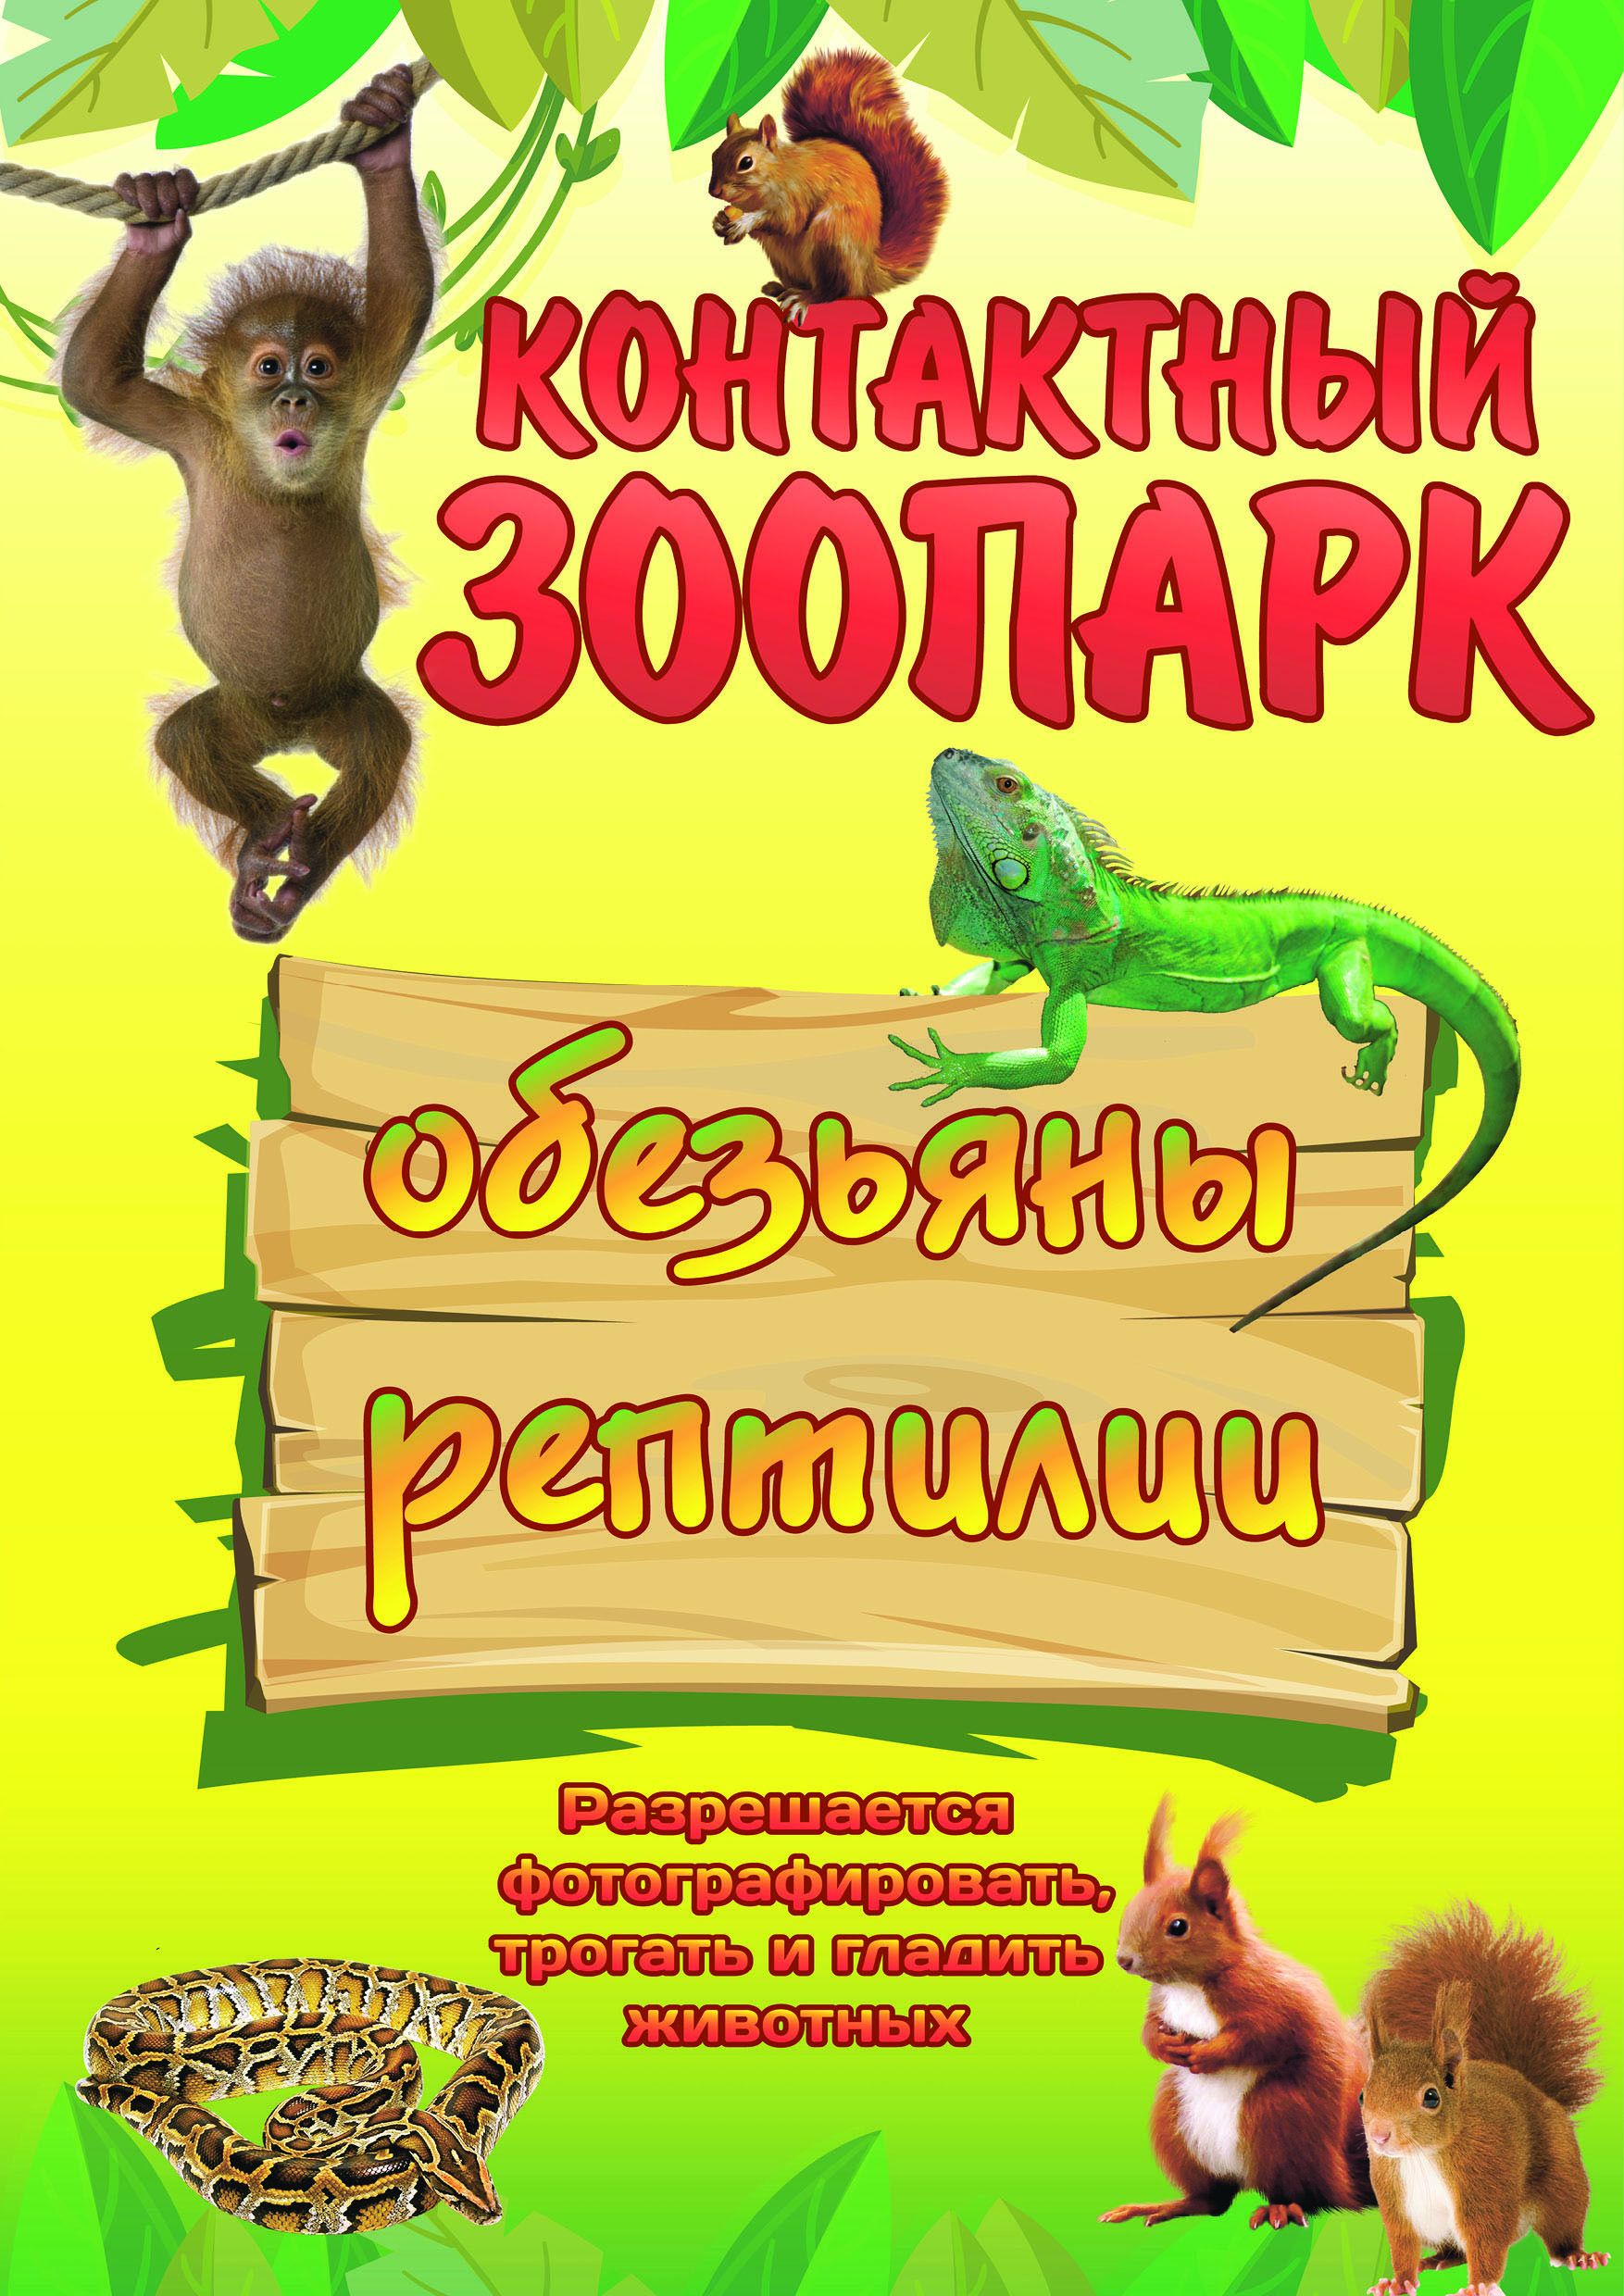 ПРИХОДИ на выставку рептилий и обезьян в Азнакаево